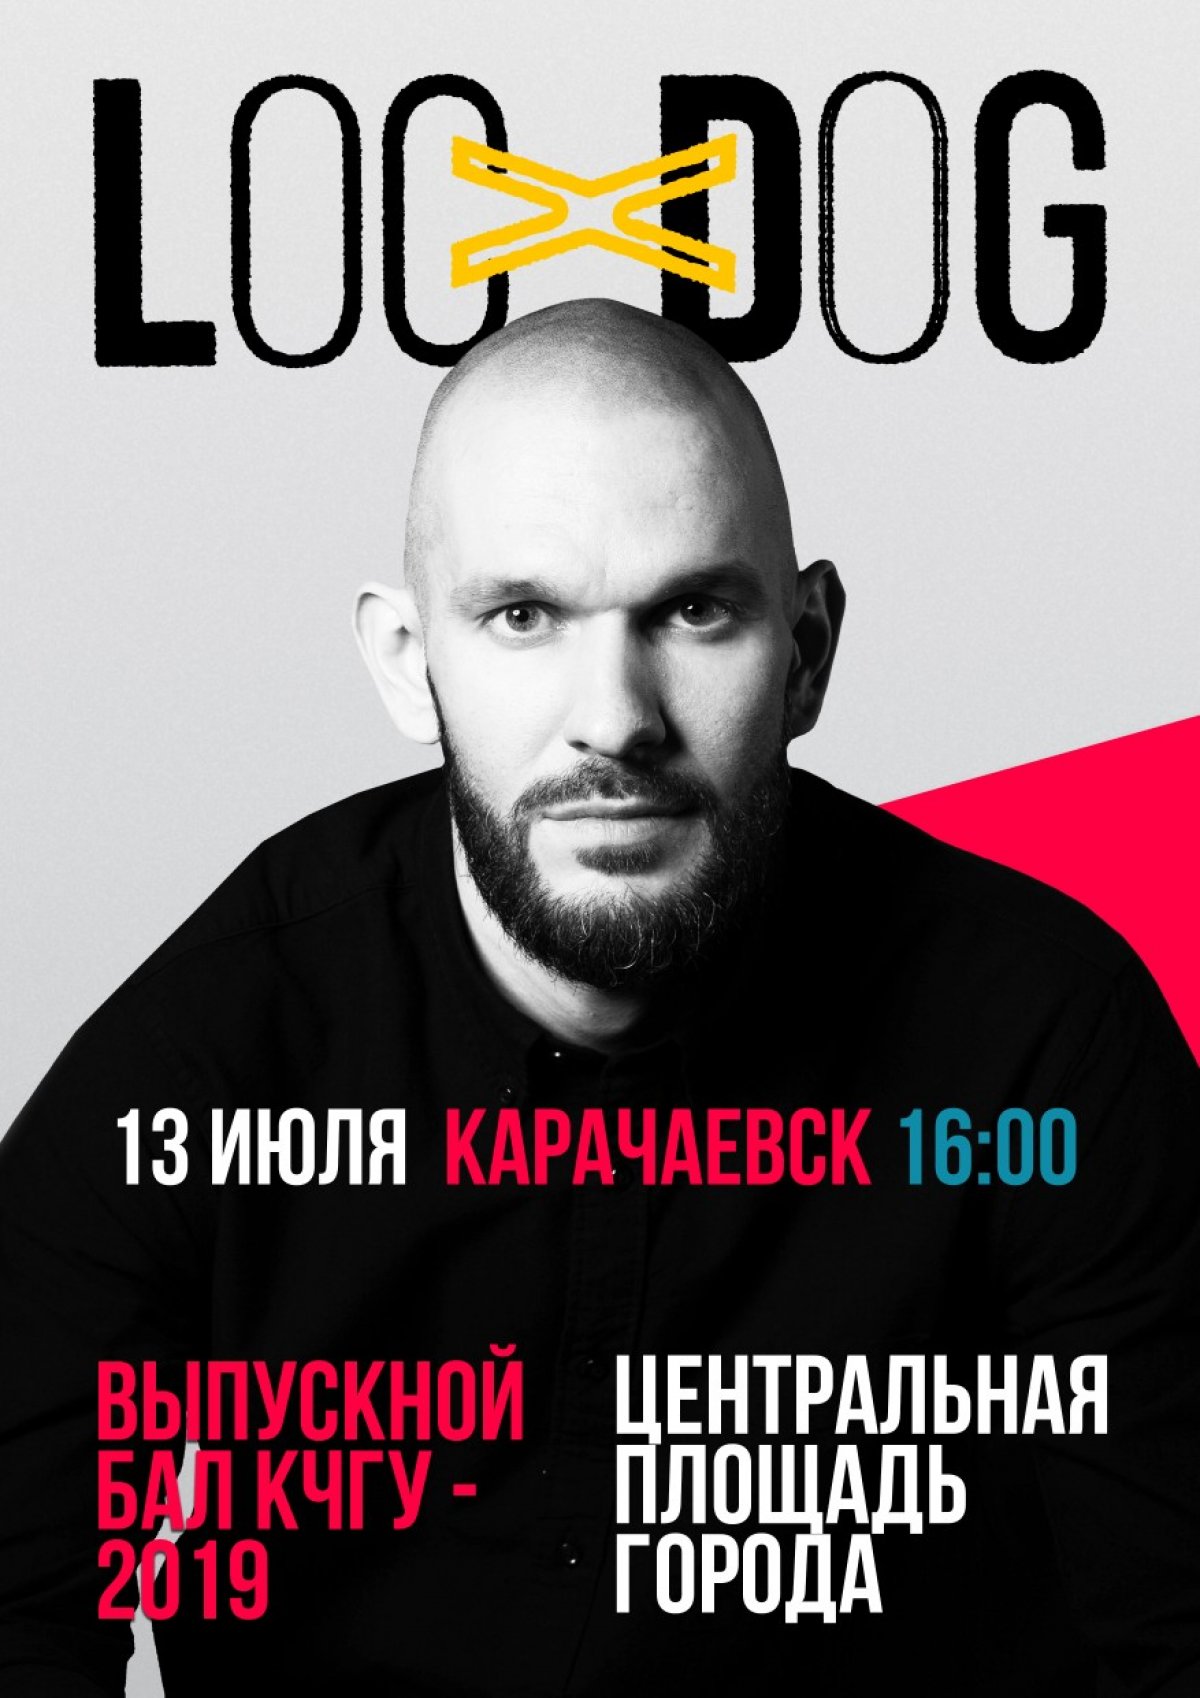 🔥 13 июля в 16:00 на центральной площади города Карачаевска состоится выпускной вечер КЧГУ, на котором выступит один из талантливейших артистов России Loc-Dog